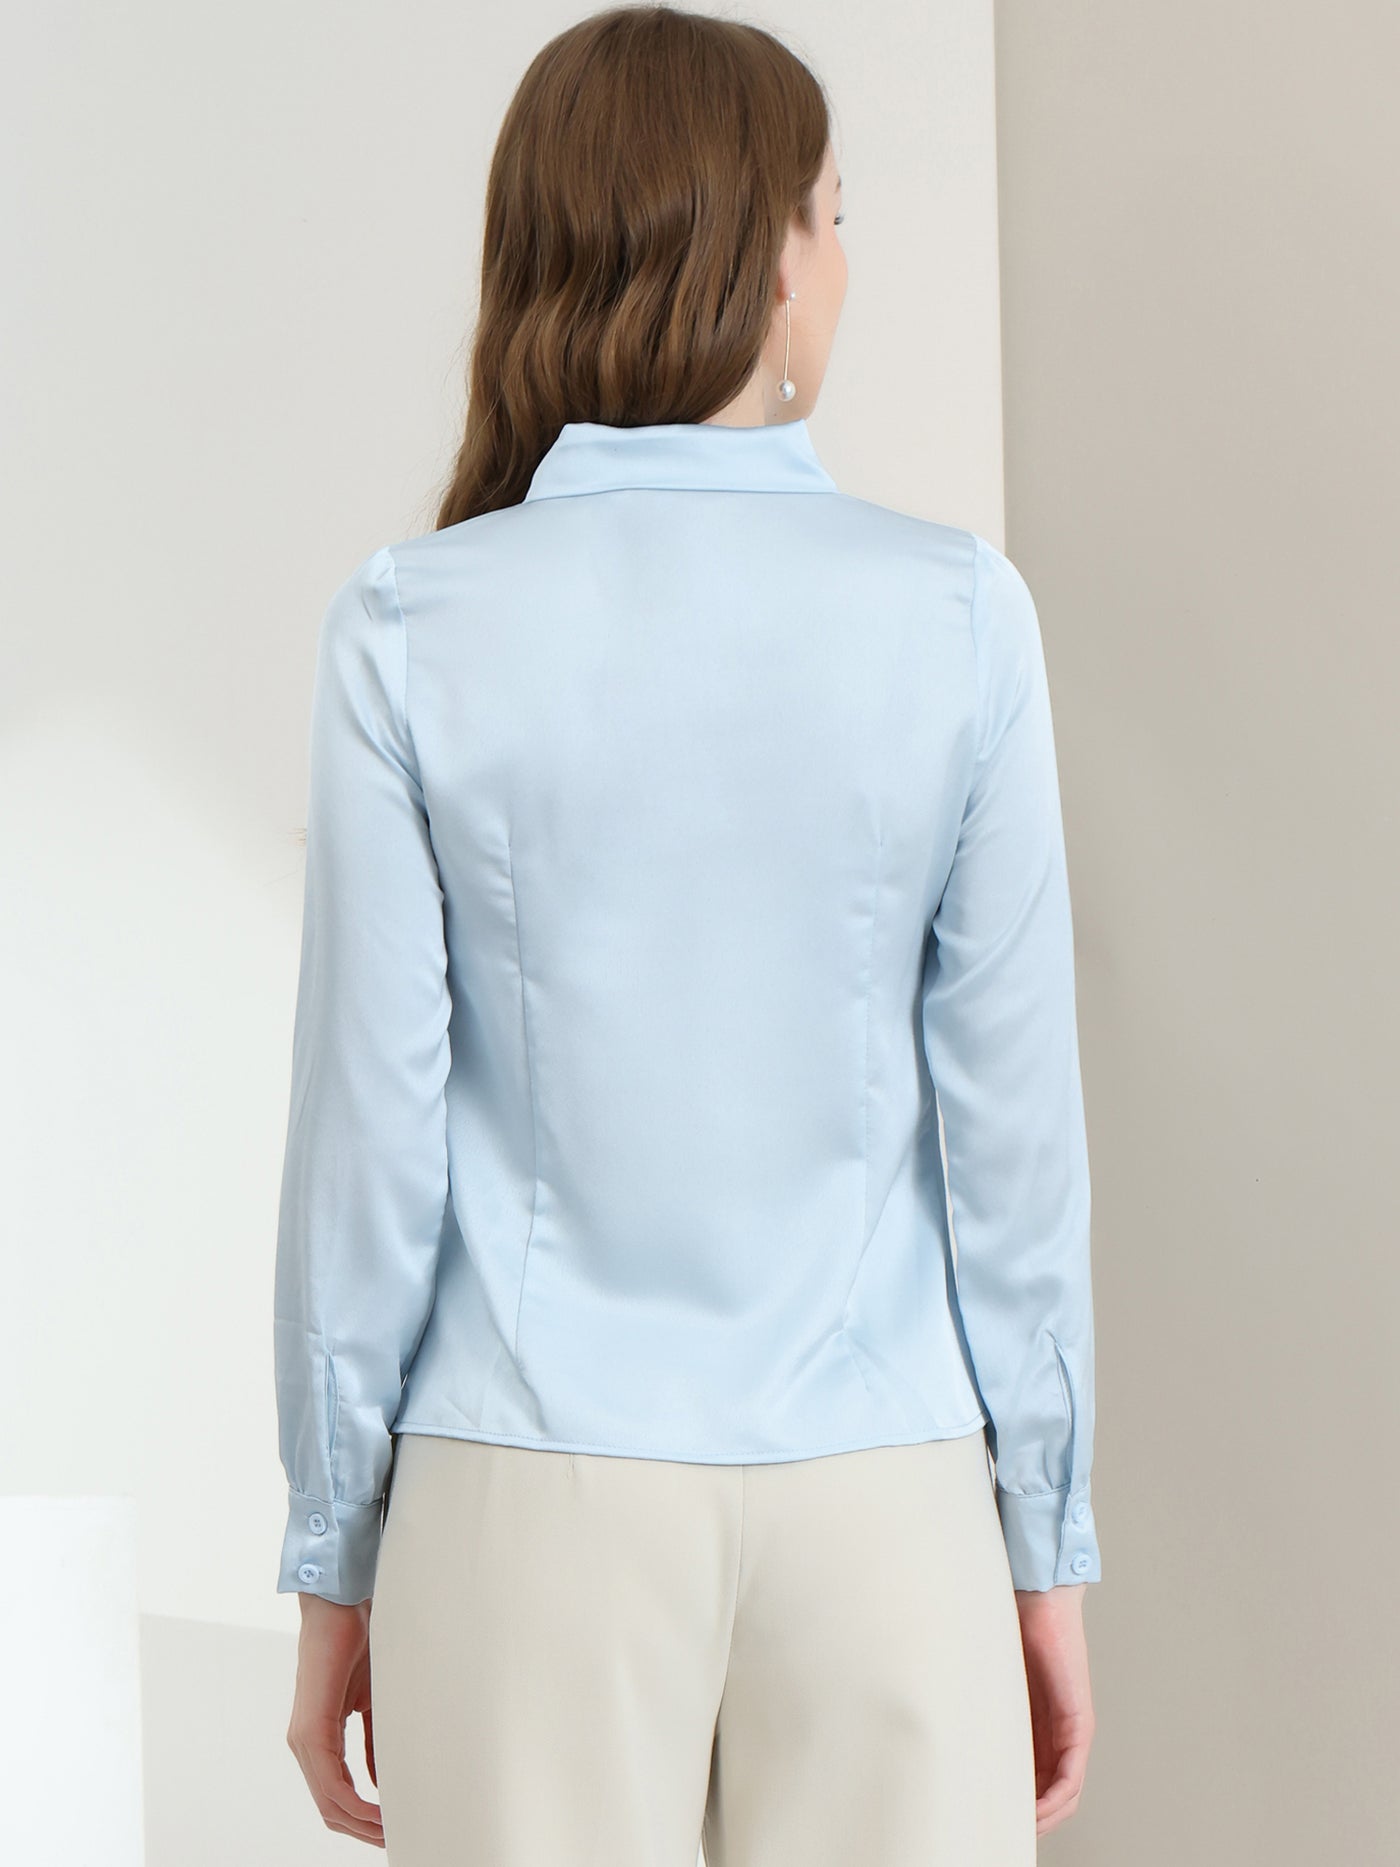 Allegra K Work Top Satin Blouse Tie Neck Long sleeve Button Up Shirt